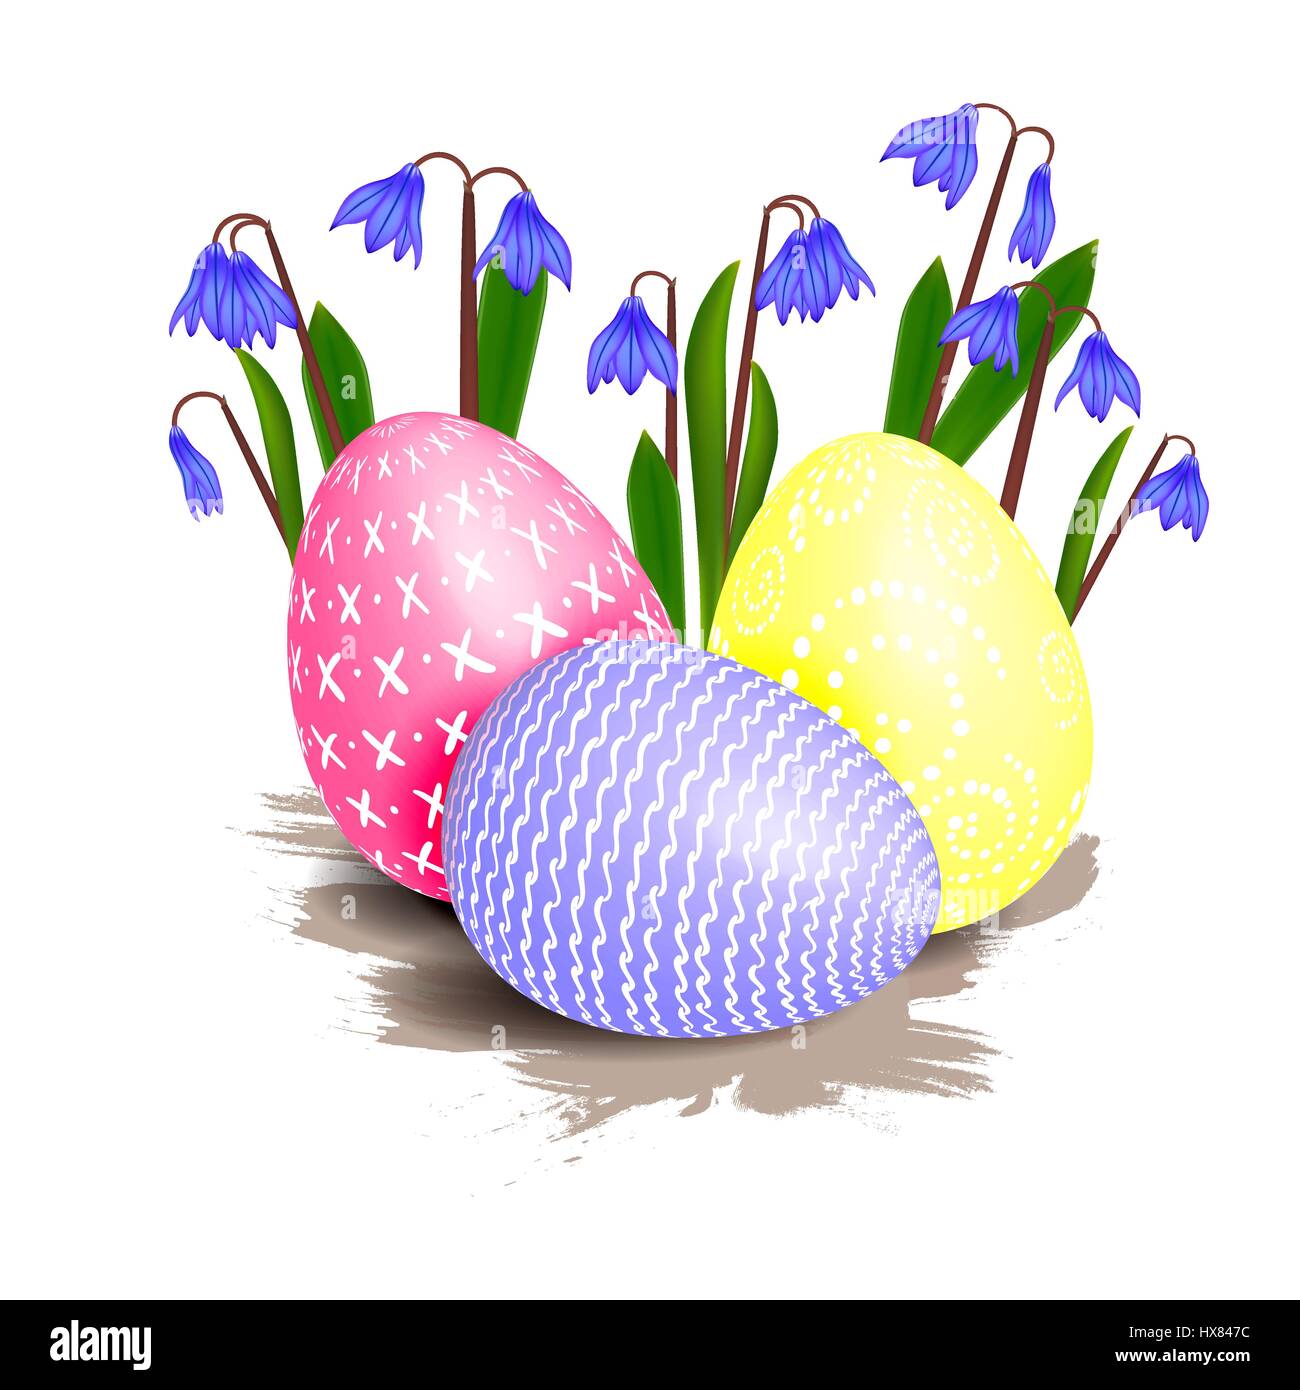 Più luminoso di pasqua uova colorate decorate con motivi circondato dalla molla blu primrose fiori con foglie verdi su sfondo bianco. Felice e Illustrazione Vettoriale